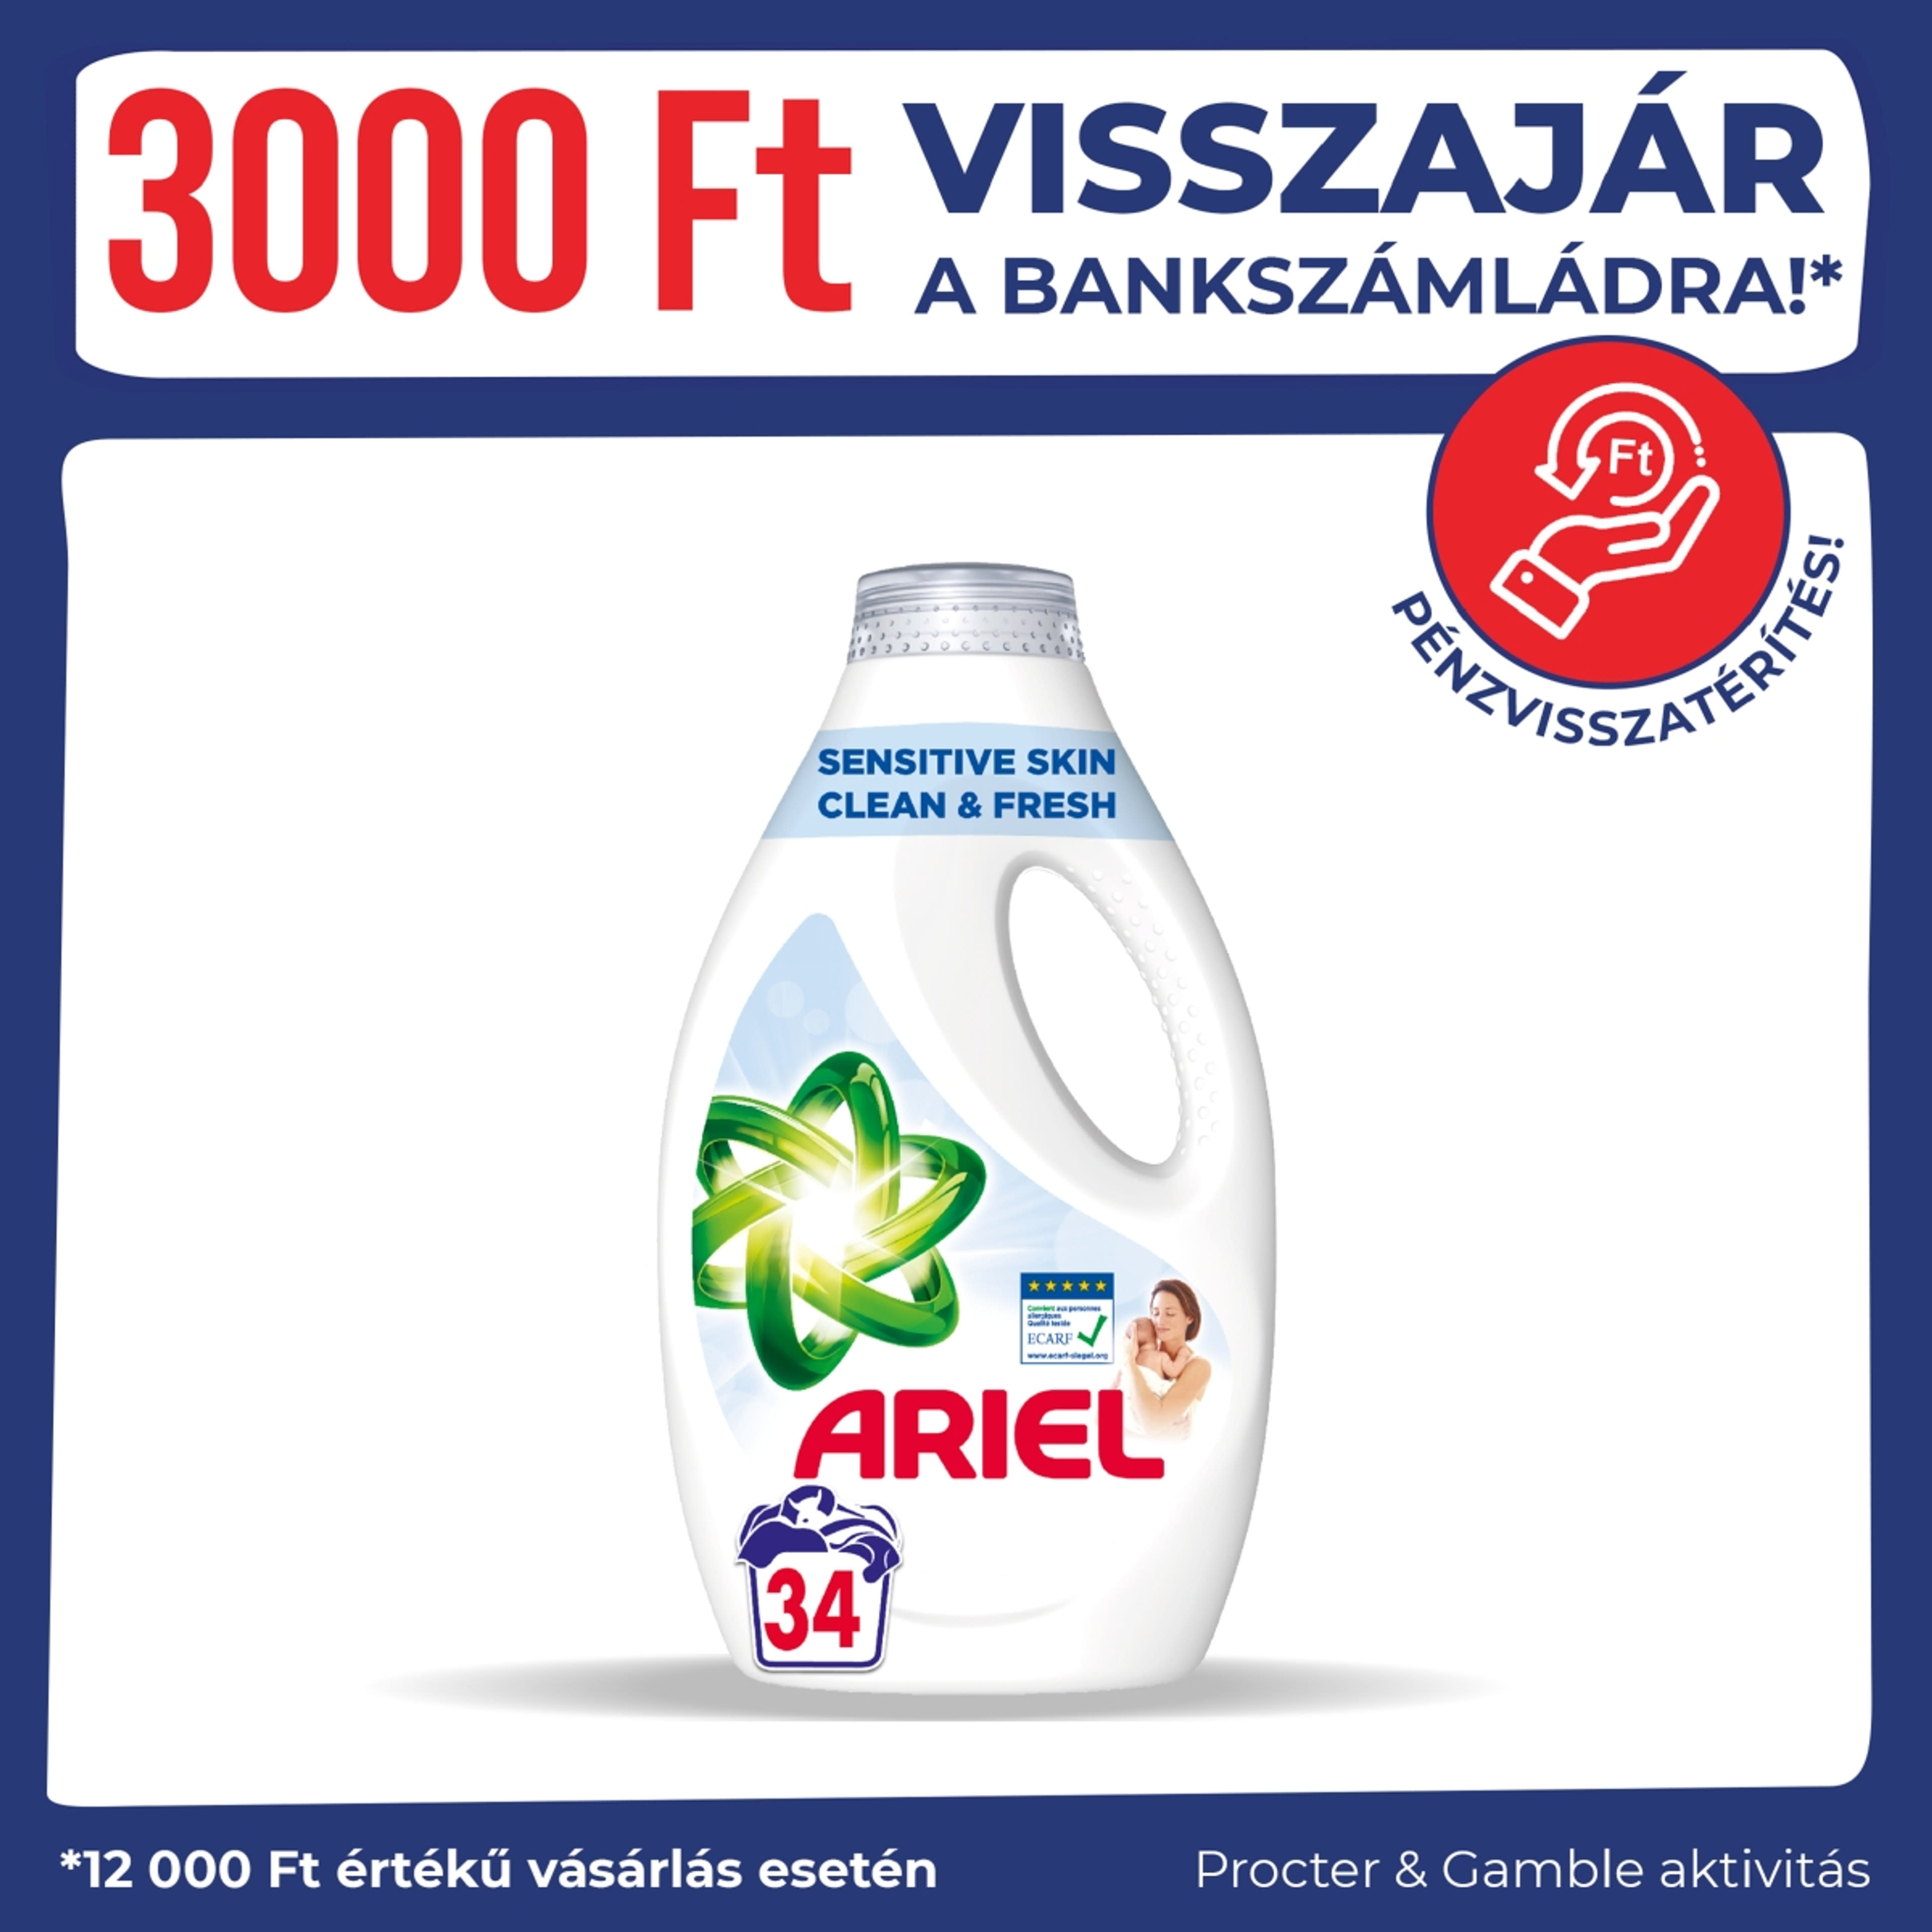 Ariel Sensitive Skin Clean & Fresh folyékony mosószer, 34 mosáshoz - 1700 ml